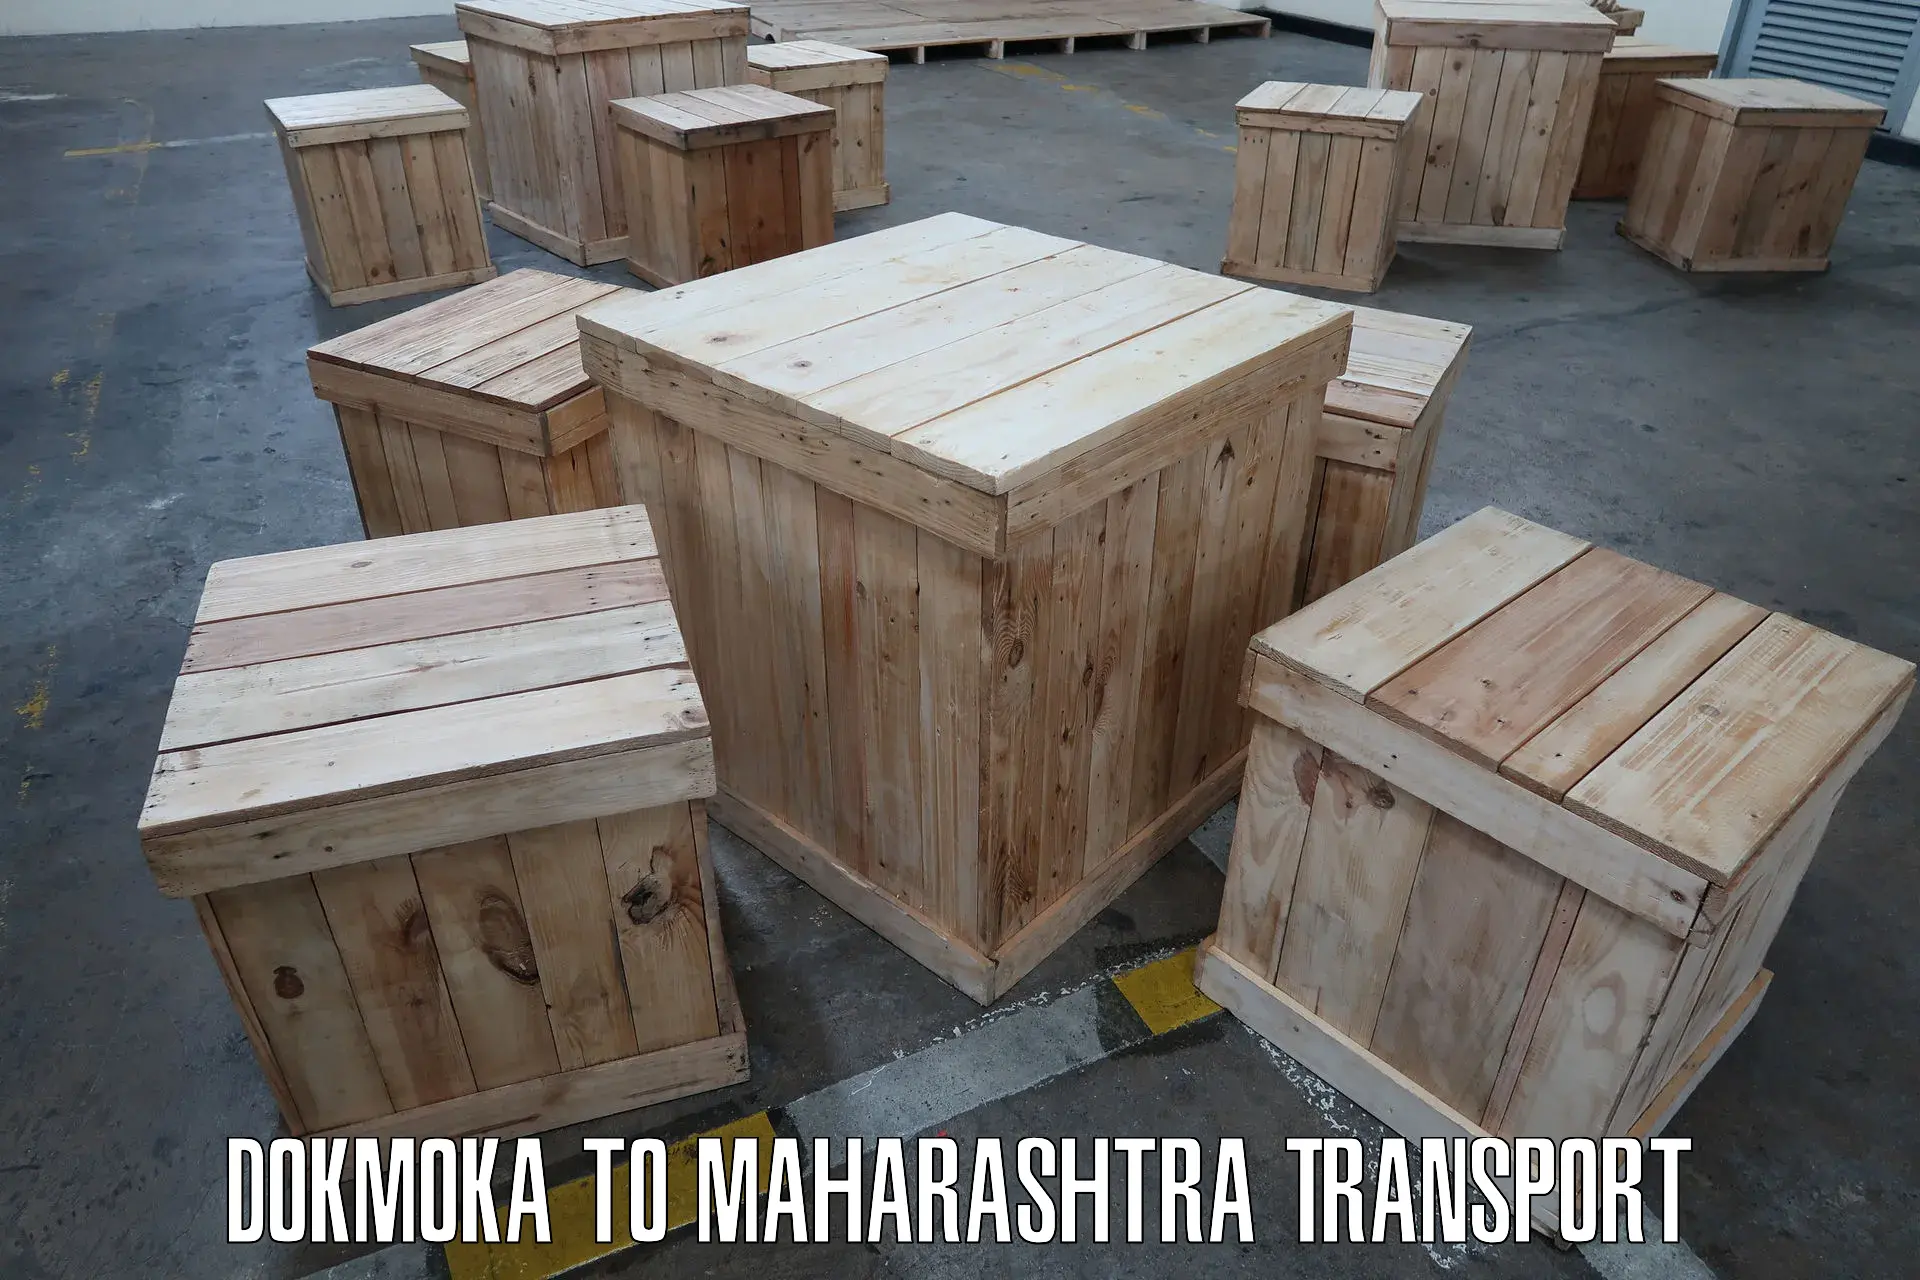 Luggage transport services Dokmoka to Mahabaleshwar